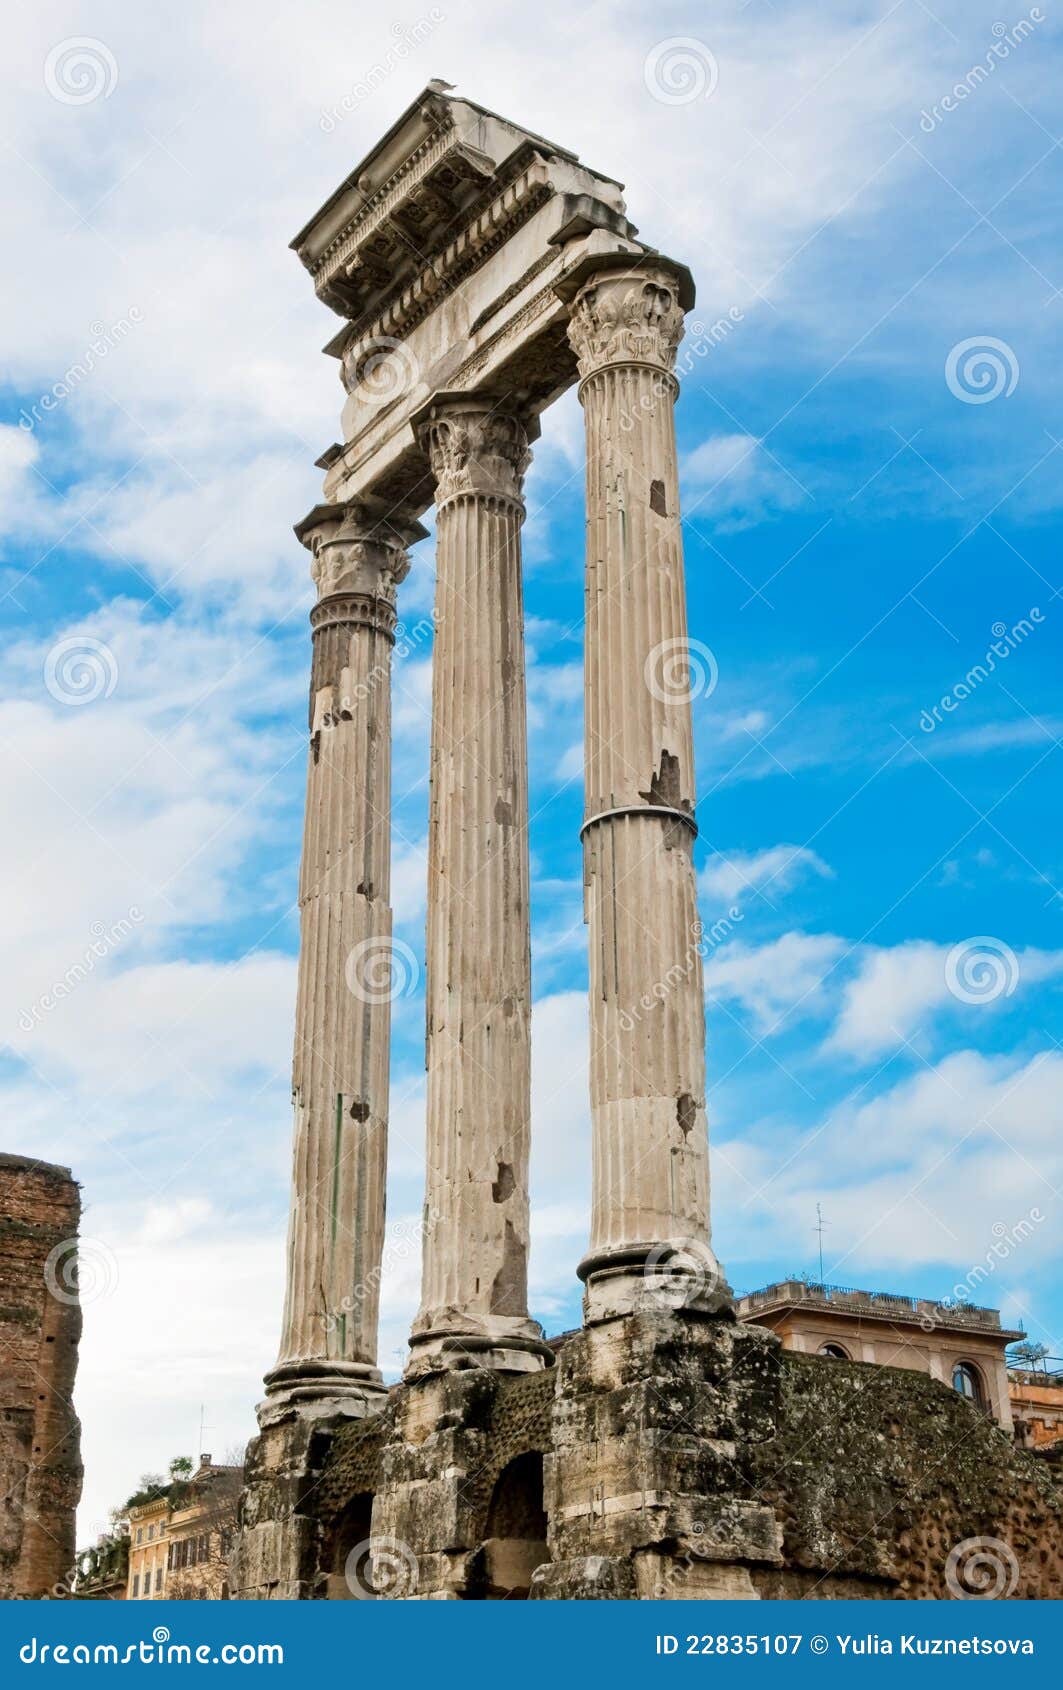 temple of castor and pollux, foro romano, roma